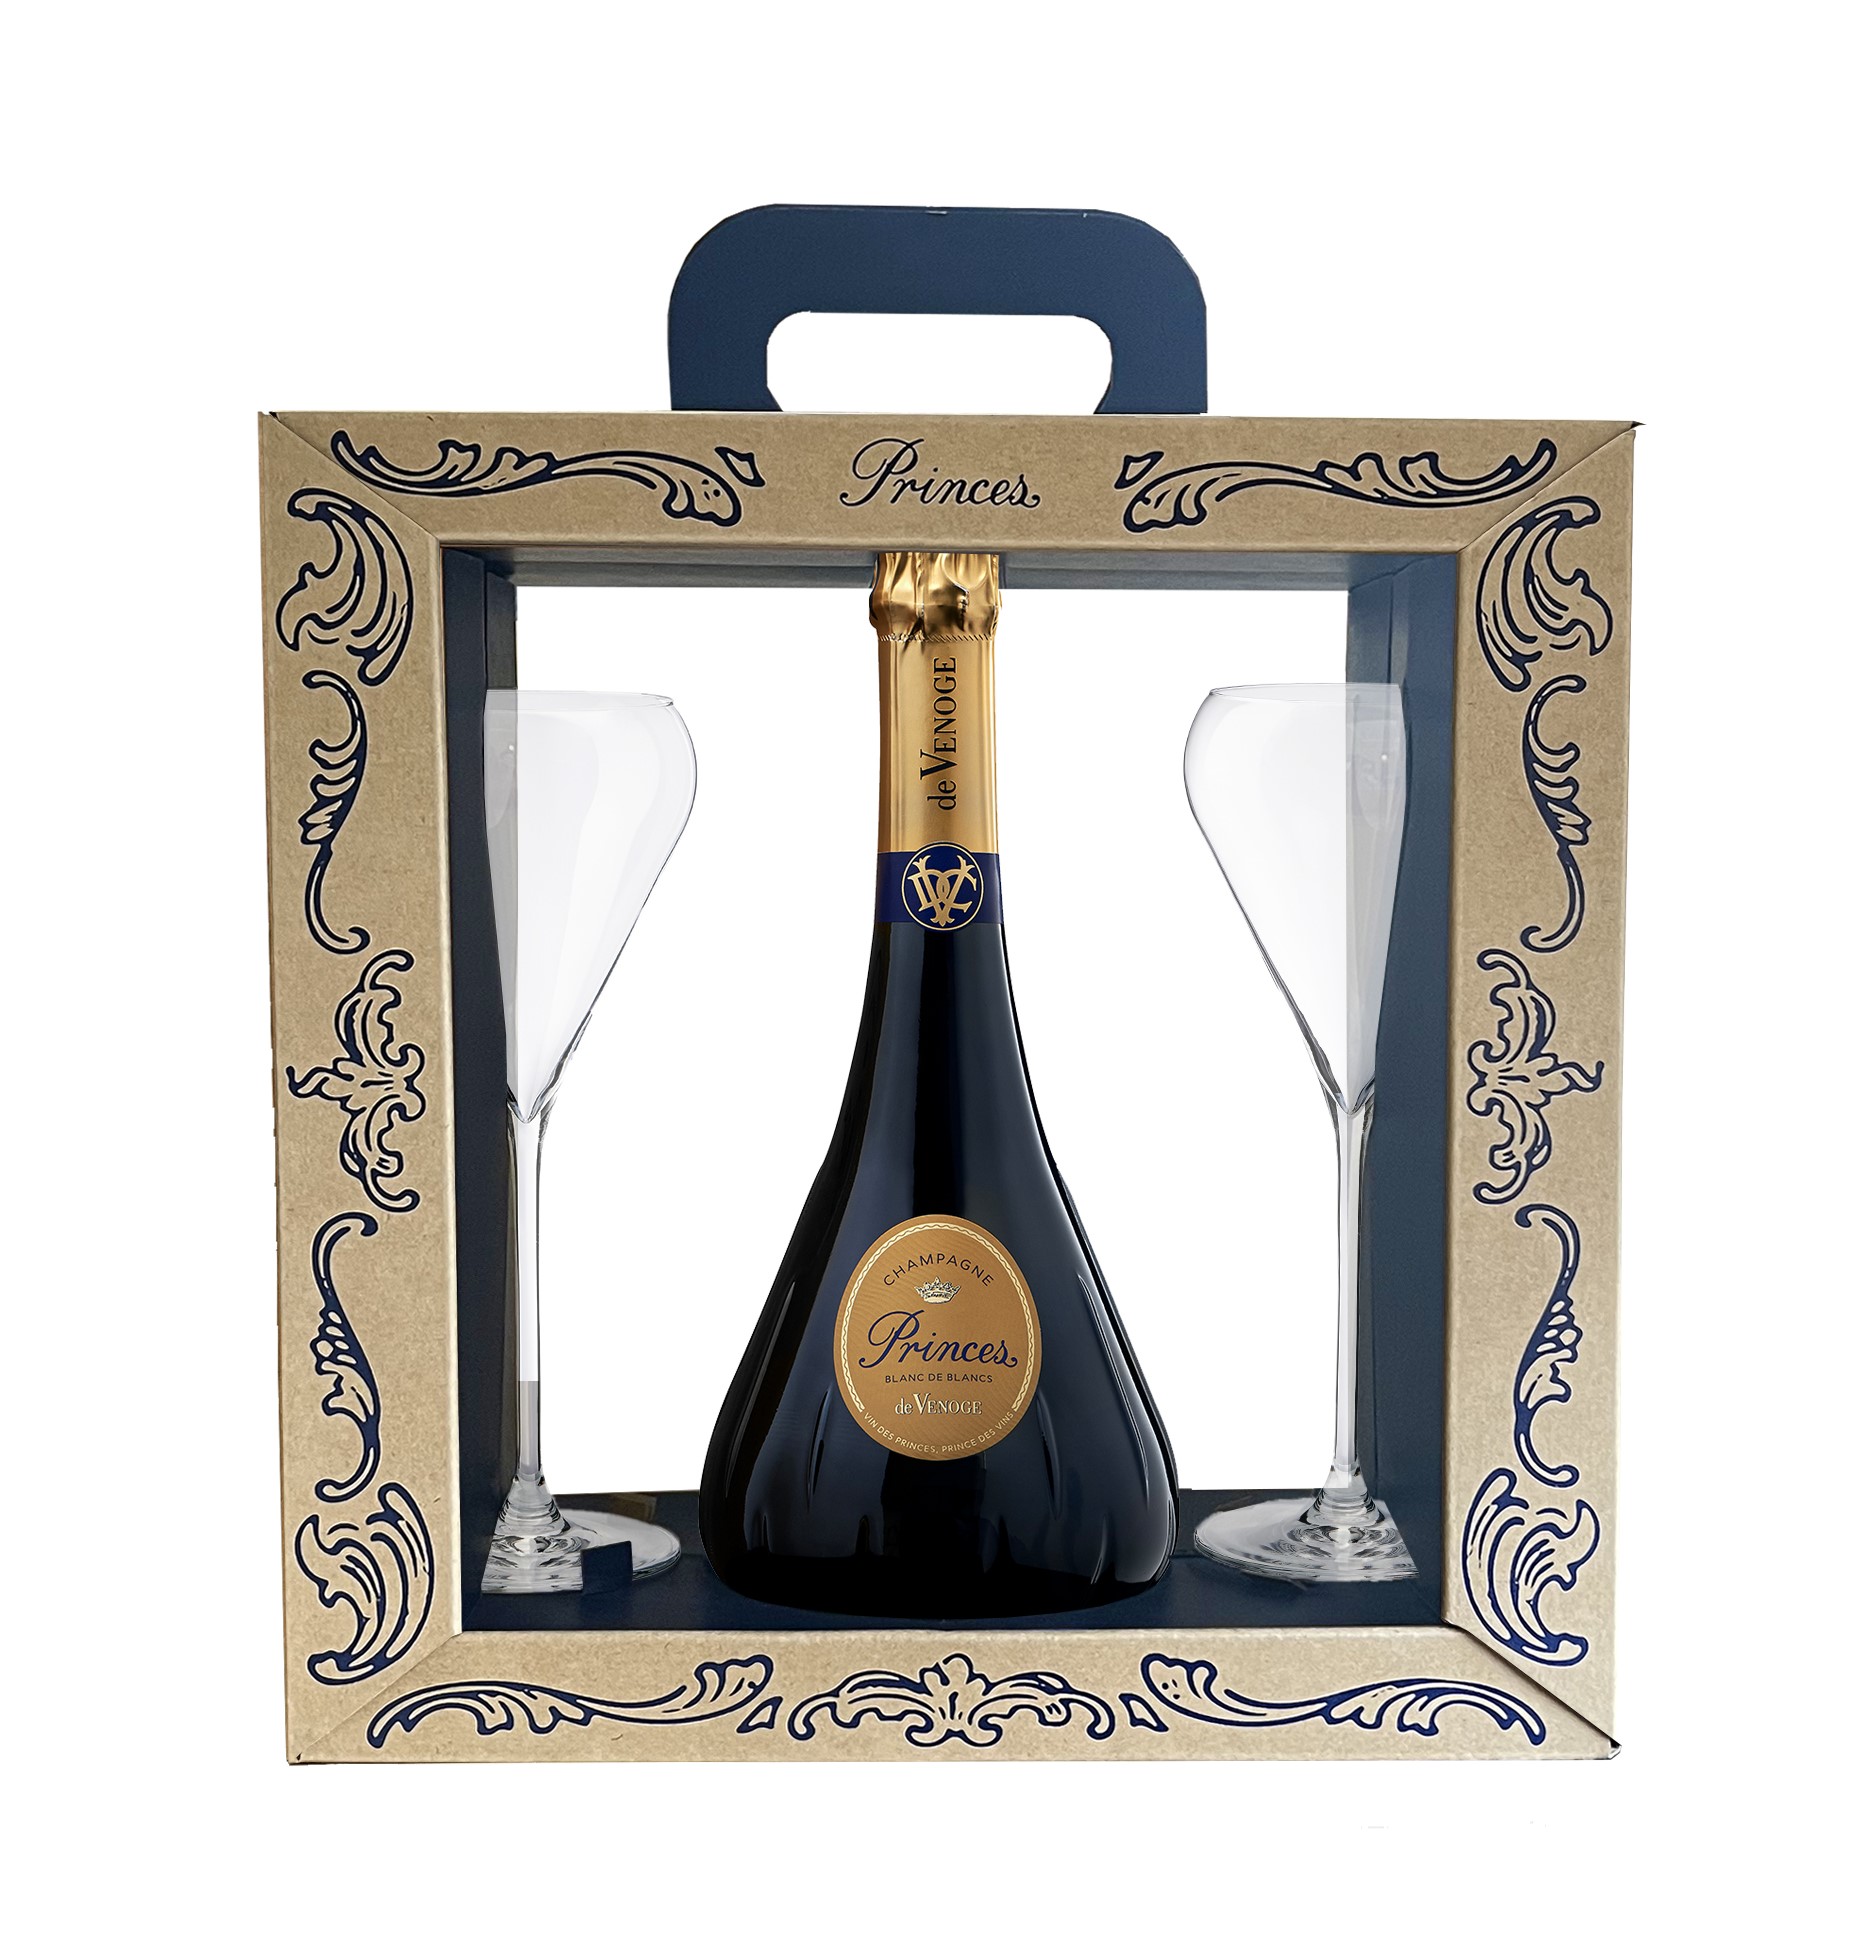 The Cuvées – Champagne de Venoge